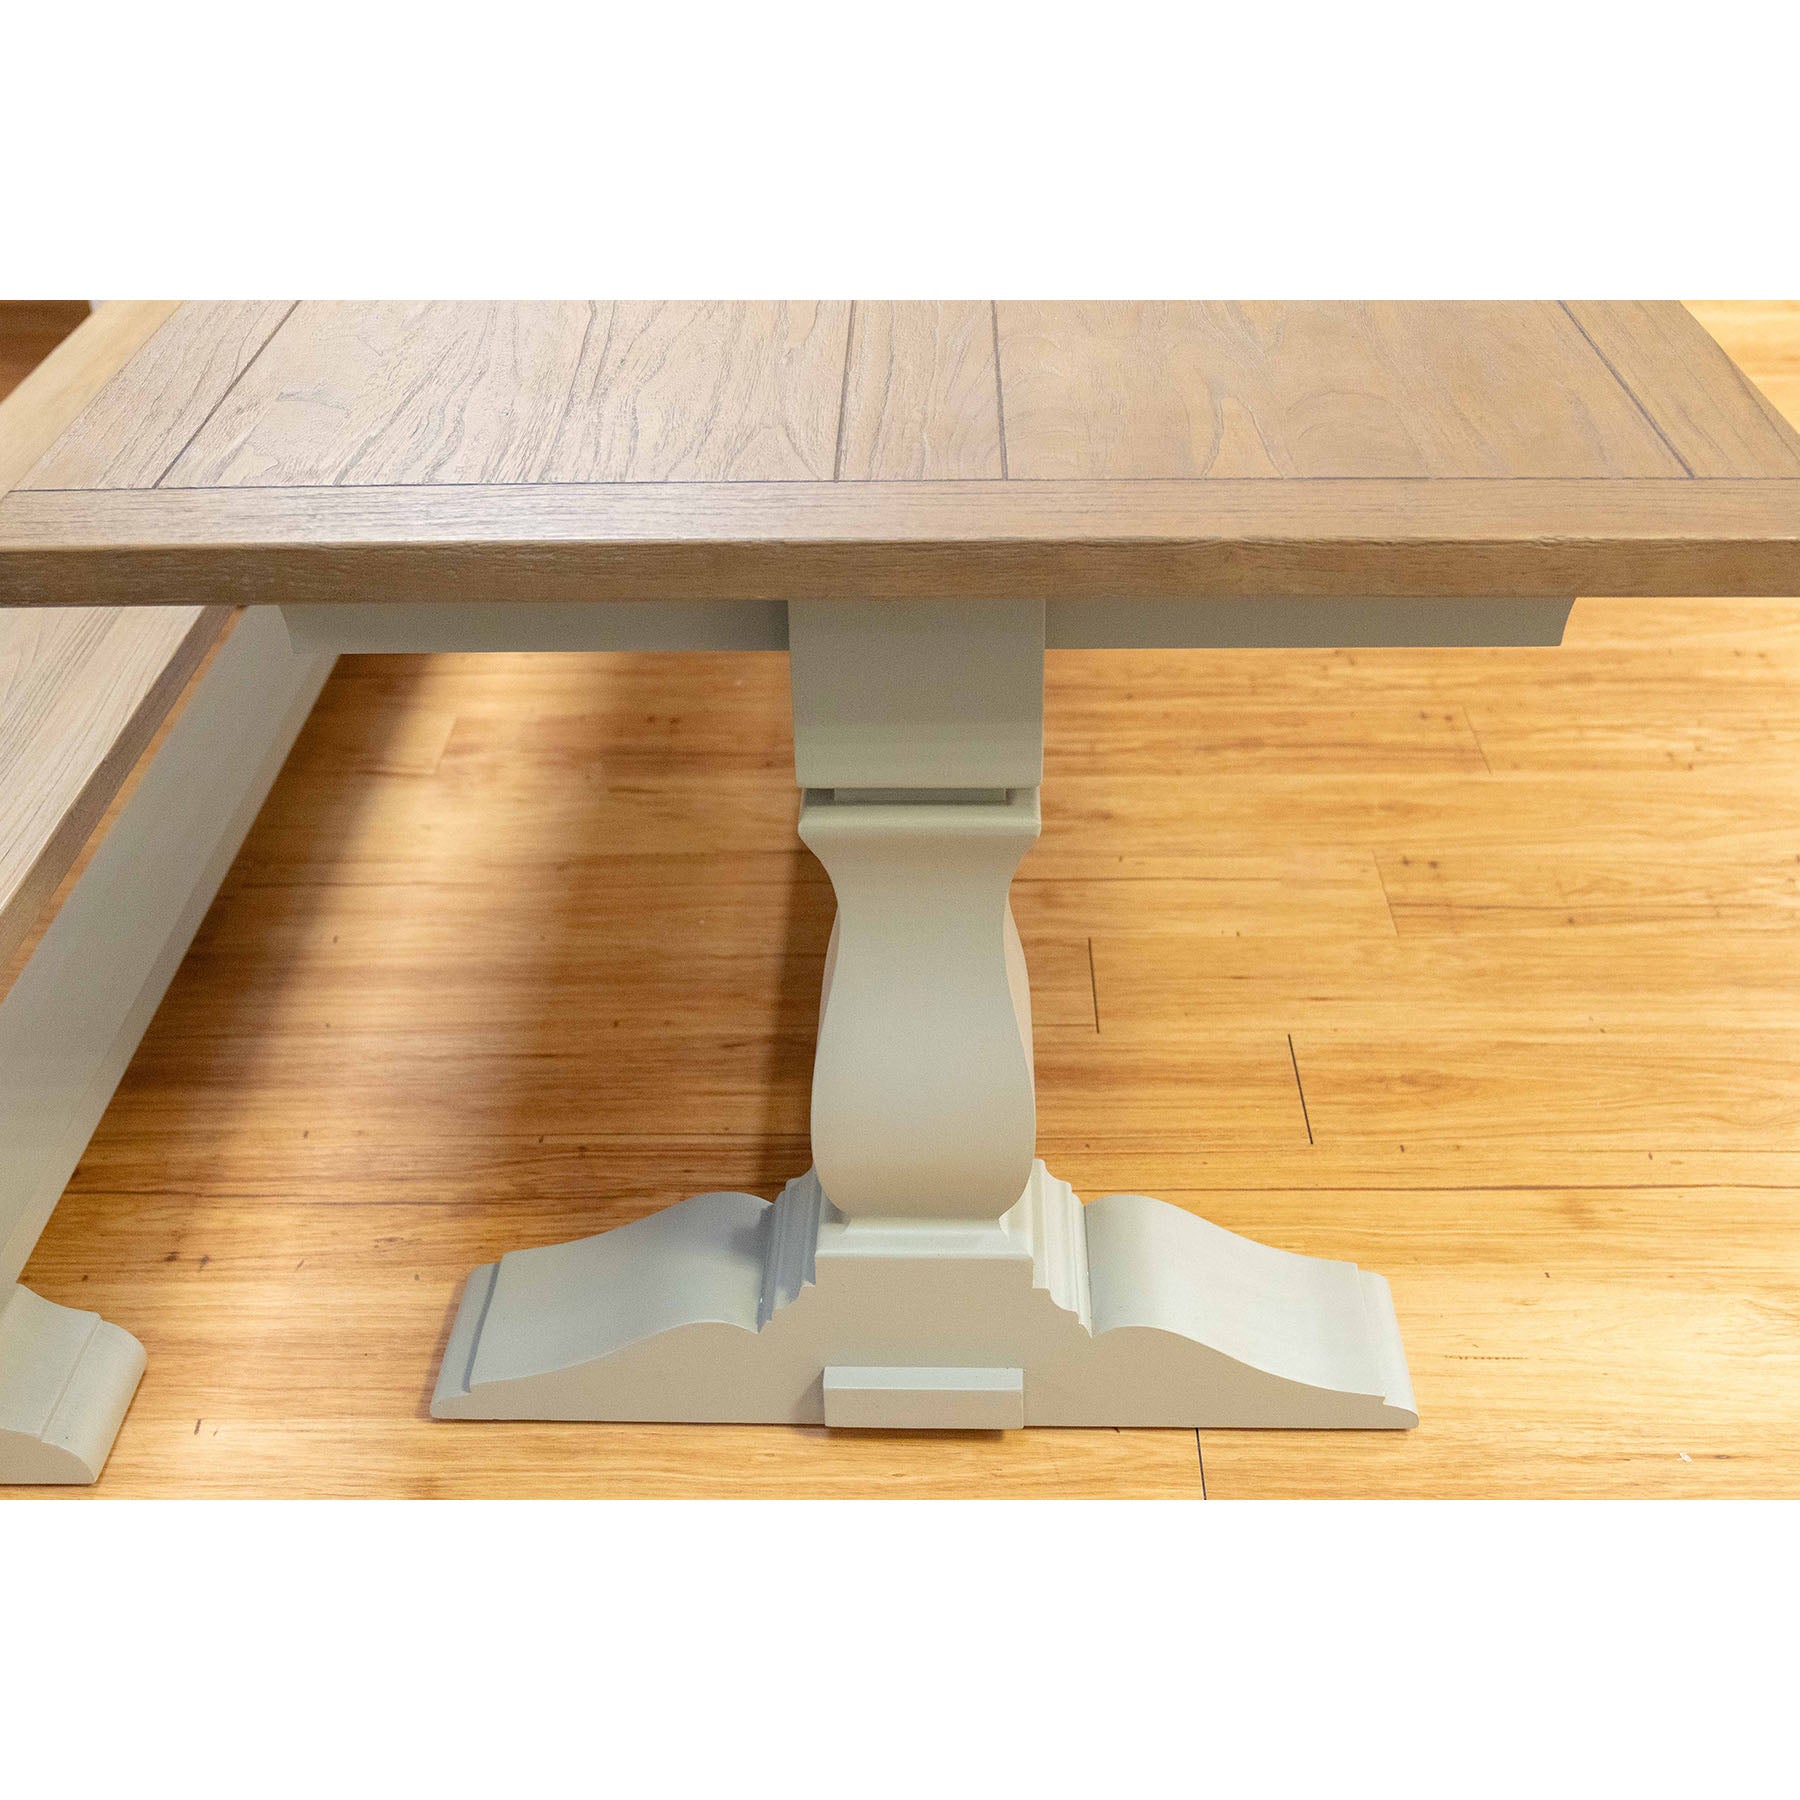 Sara 2 Ext Table – Hardwick/Rustic Brown - Display Model